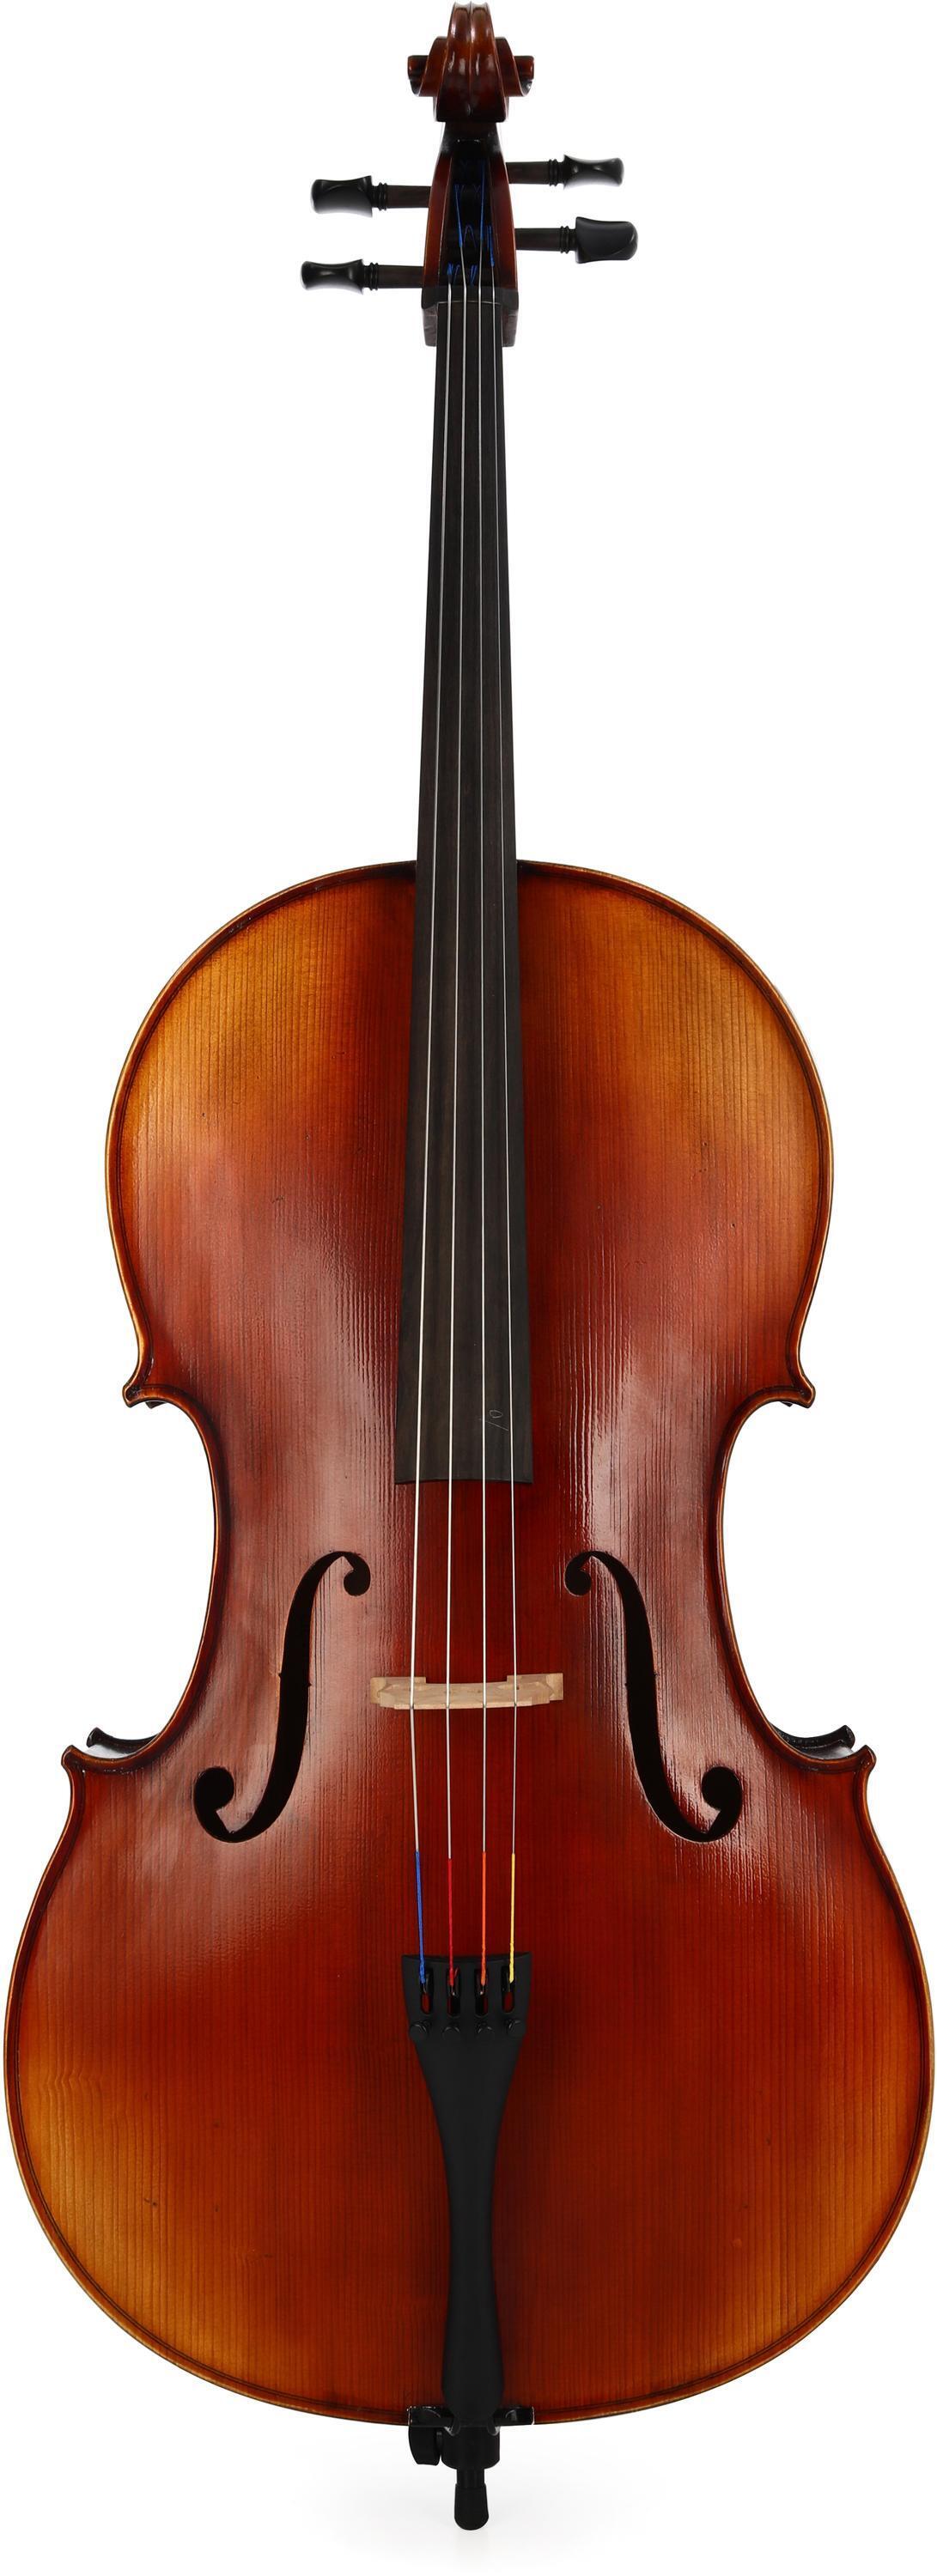 Support pour violoncelle Gewa